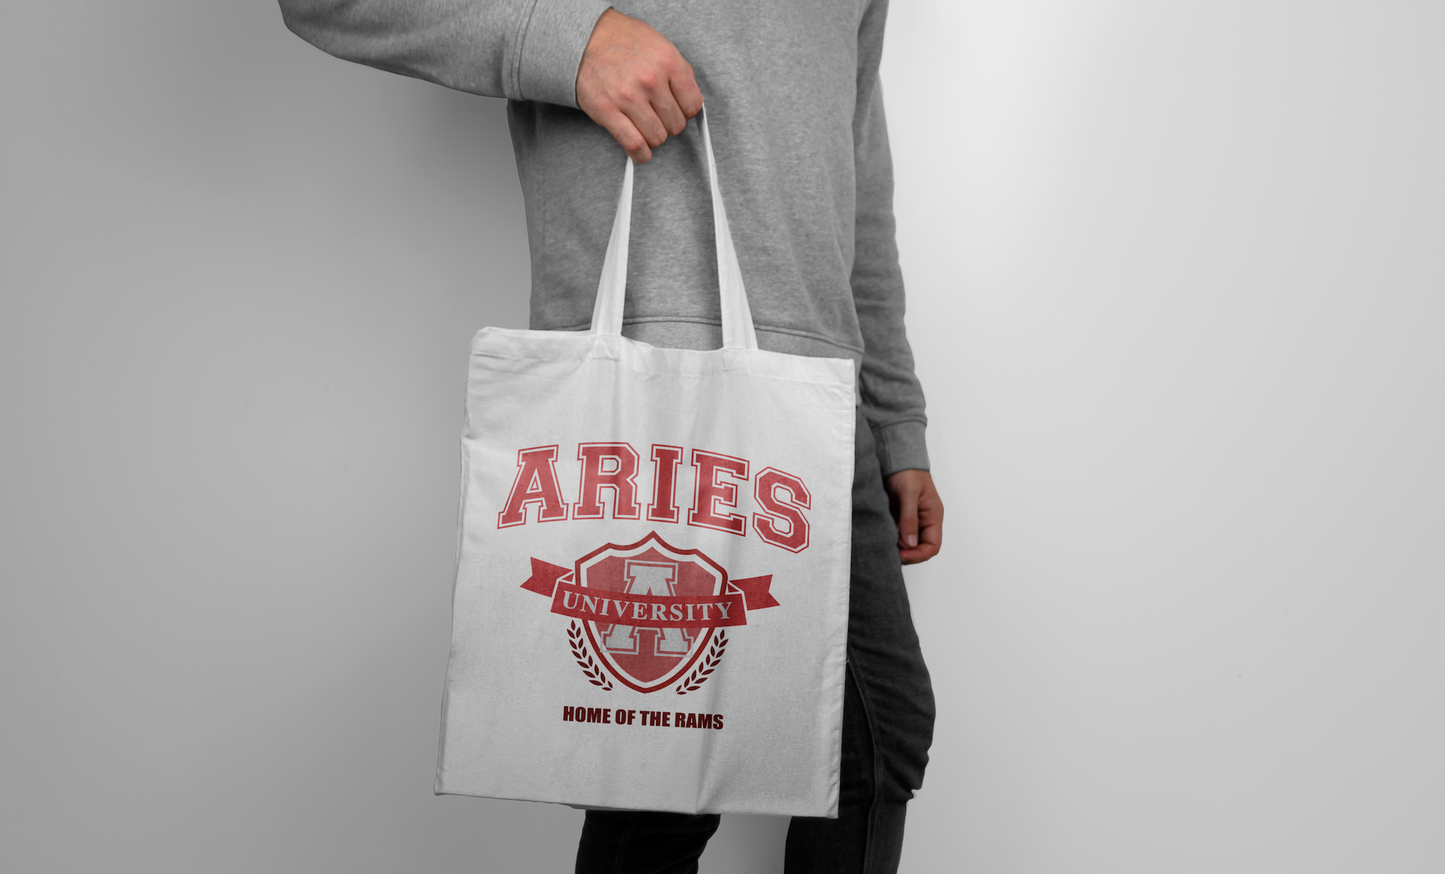 Aries University Tote Bag